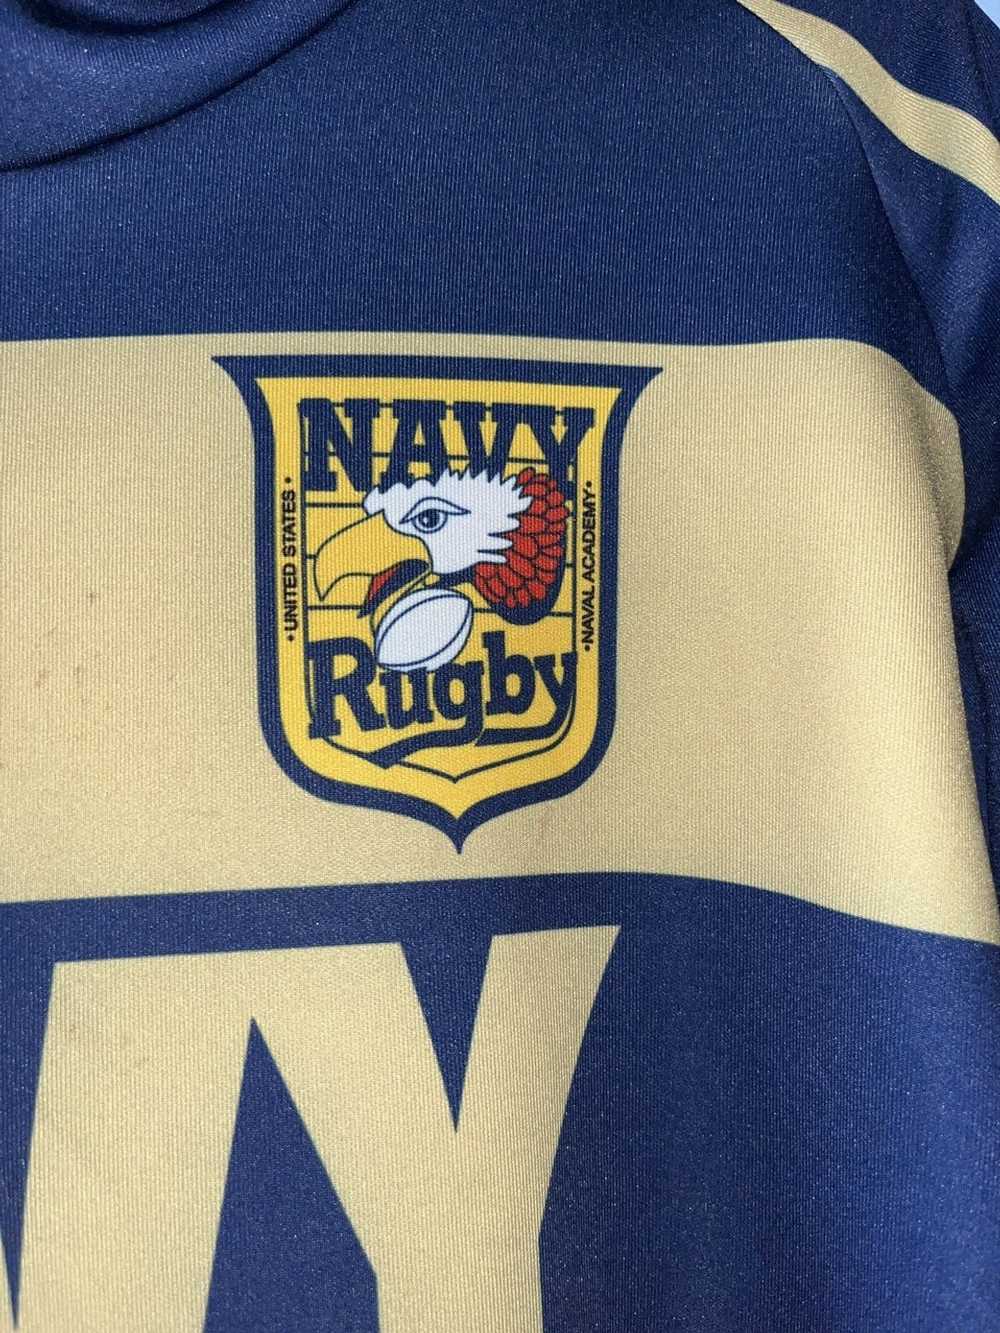 Sportswear × Streetwear Navy rugby team hoodie - image 2